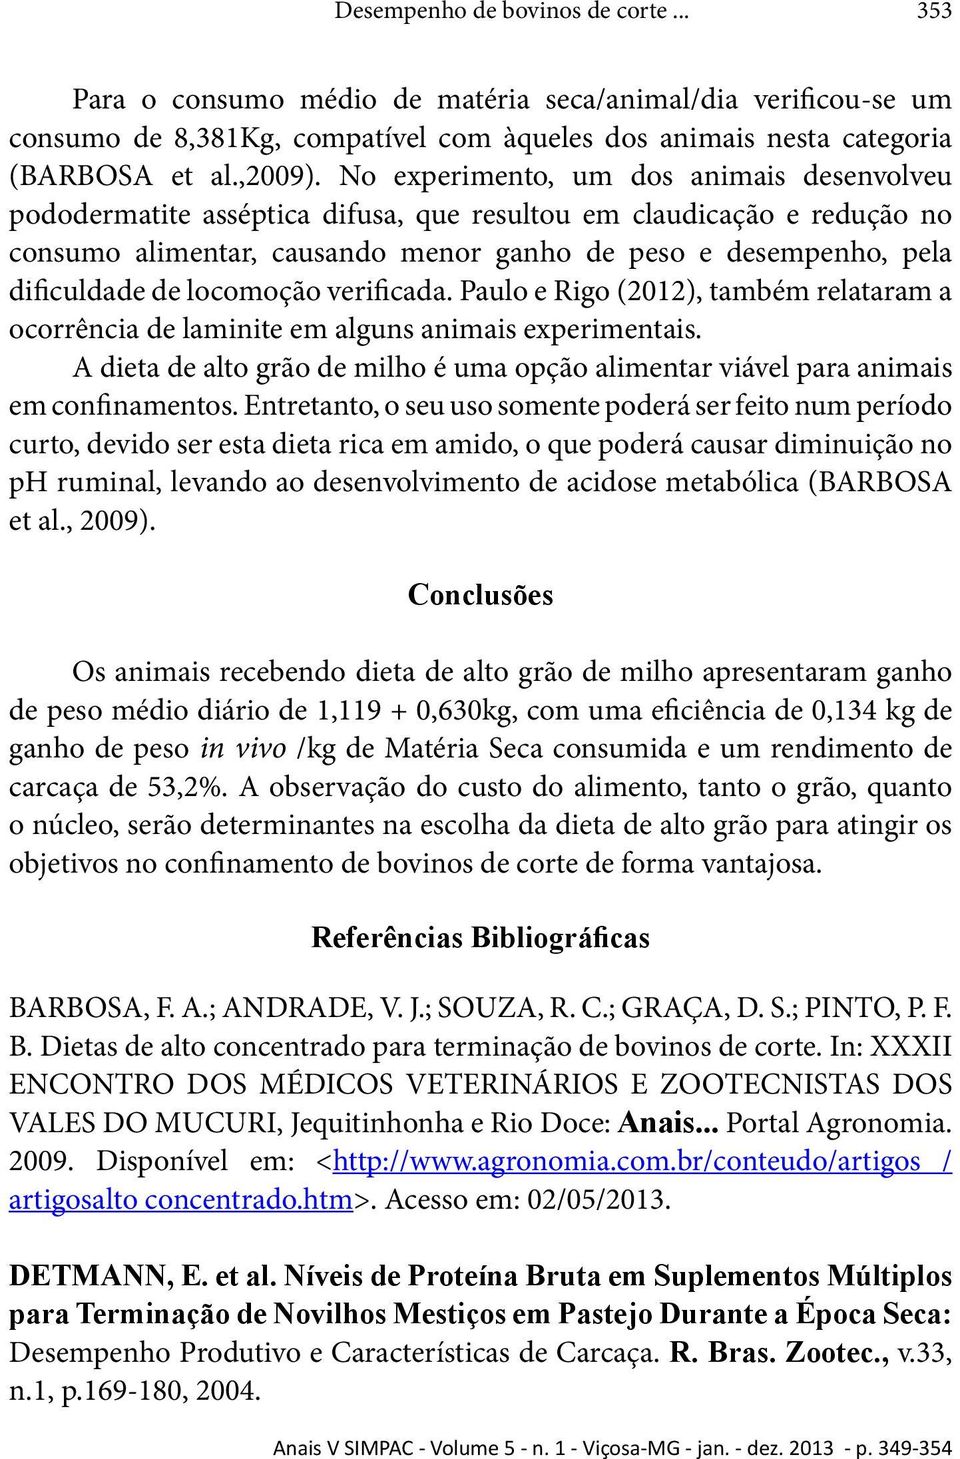 locomoção verificada. Paulo e Rigo (2012), também relataram a ocorrência de laminite em alguns animais experimentais.